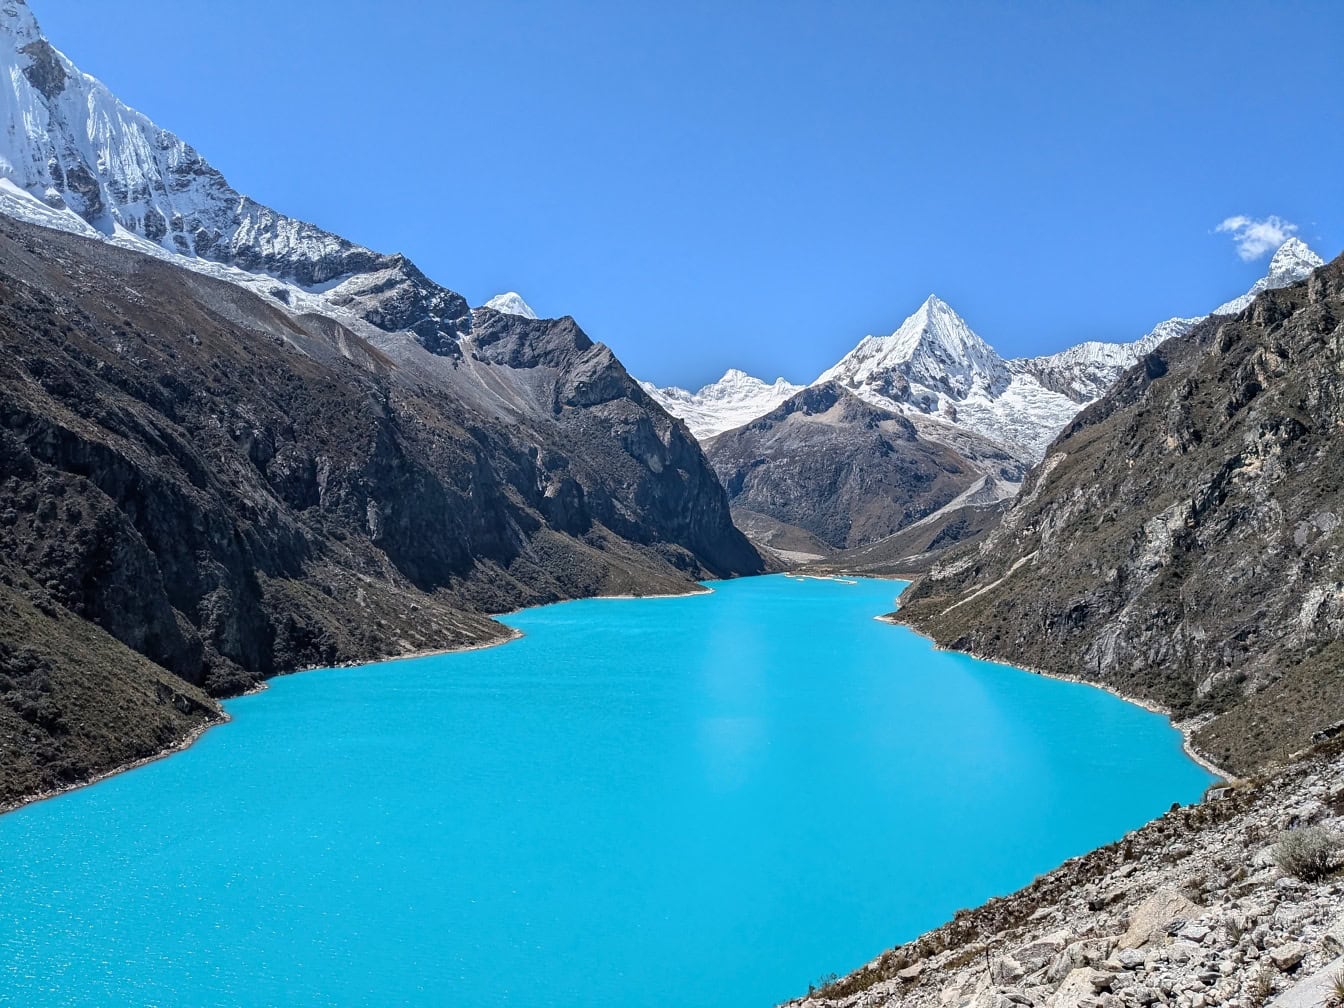 Езерото Парон с тюркоазено-синя вода Кордилера Бланка в перуанските Анди